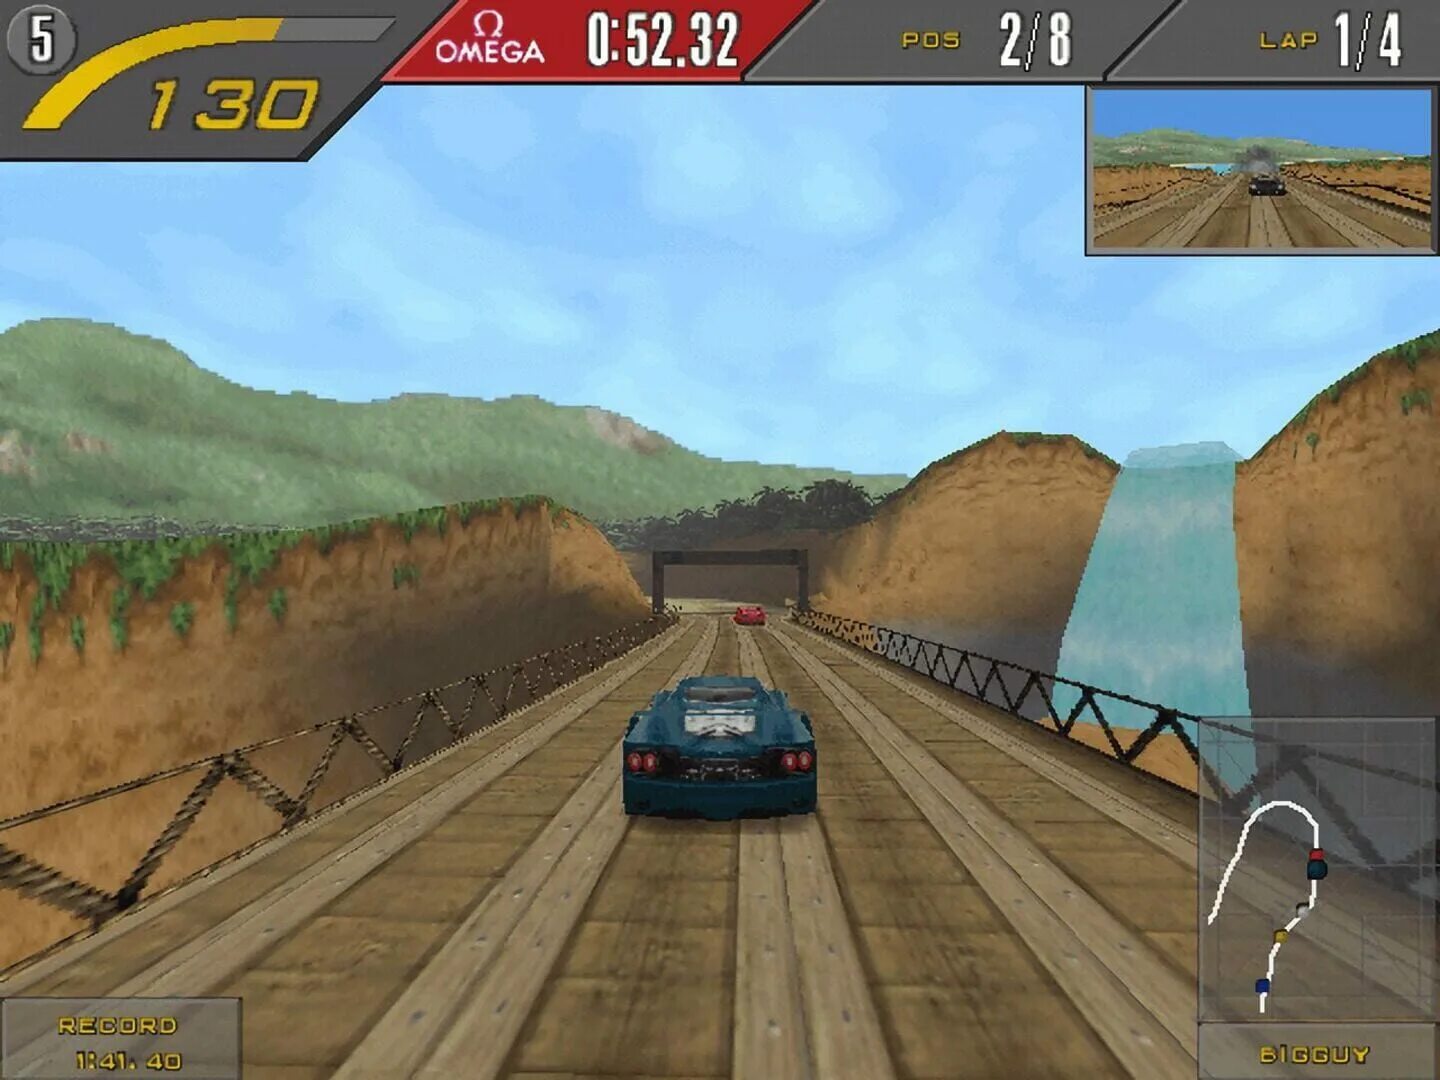 Need for Speed 2 se. Need for Speed II 1997. Need for Speed 2 Special Edition. Need for Speed 2 se 1997. Speed gaming 2